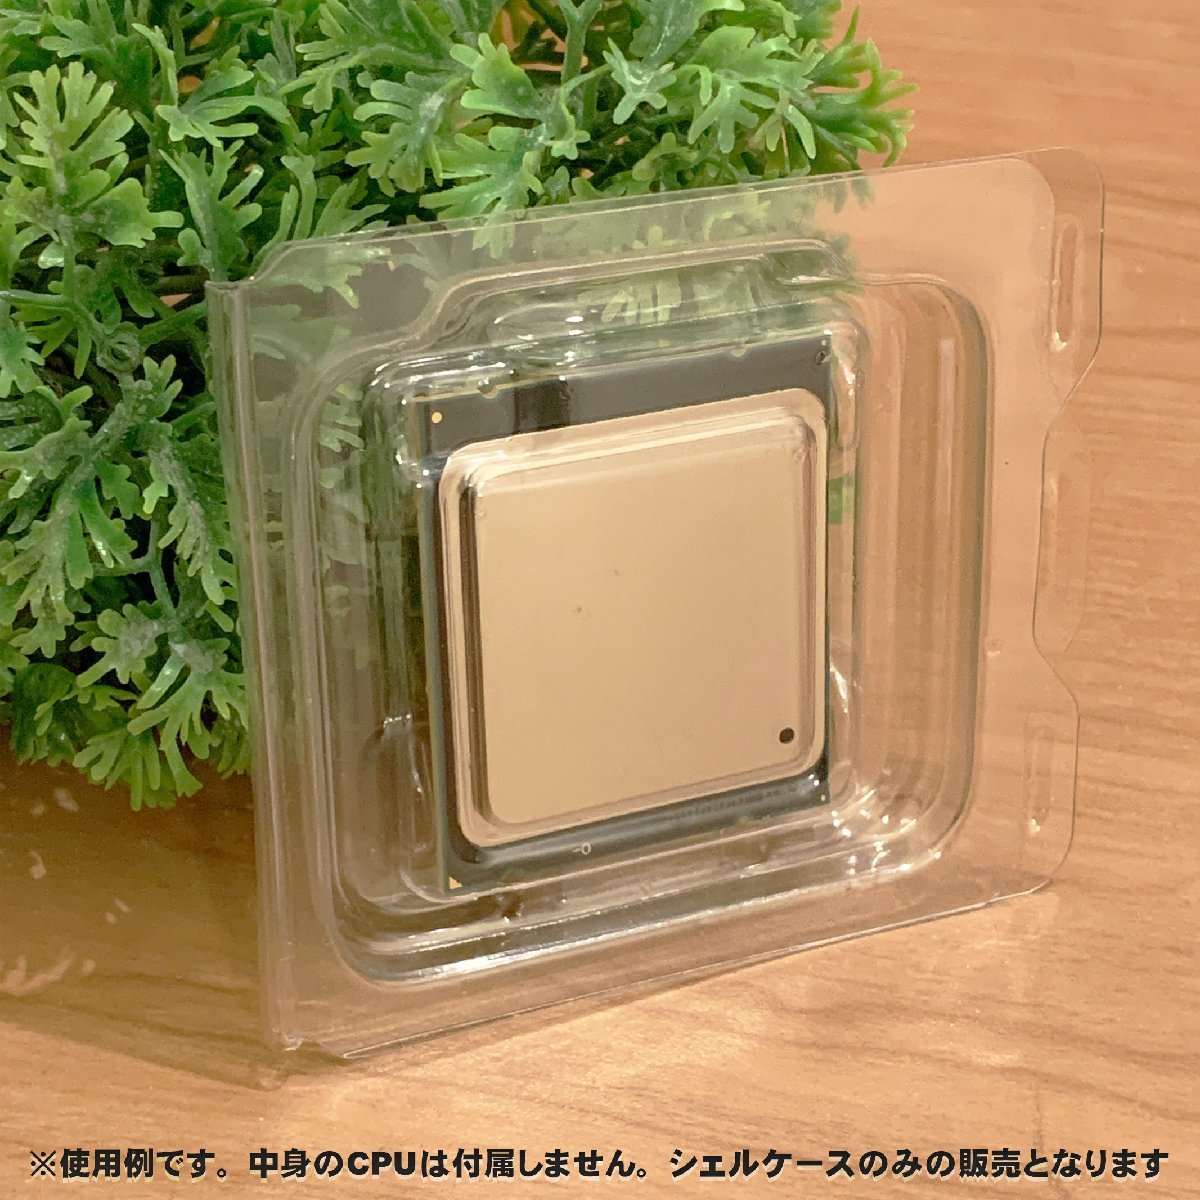 【 LGA2011 】CPU XEON シェルケース LGA 用 プラスチック 保管 収納ケース 20枚セット_画像5